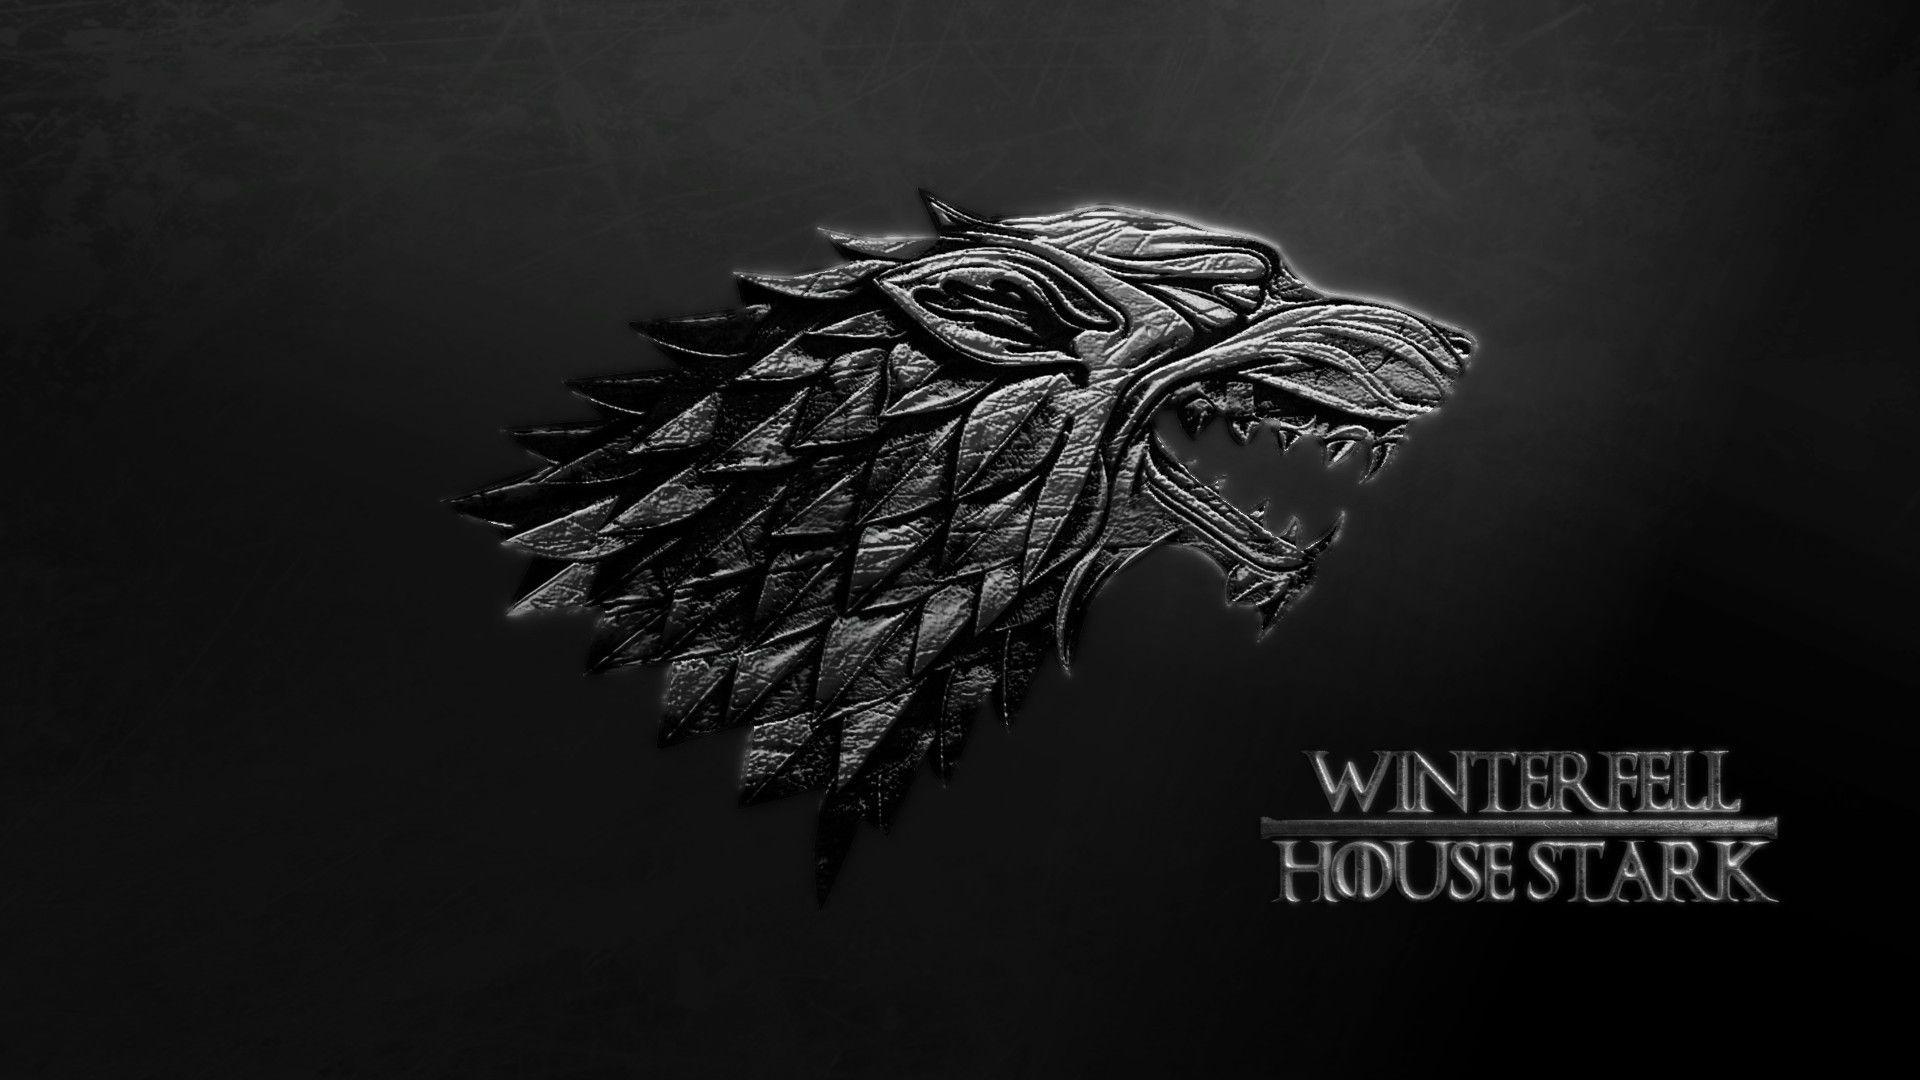 Game of Thrones  4k Wallpaper  House Stark by AKSensei on DeviantArt